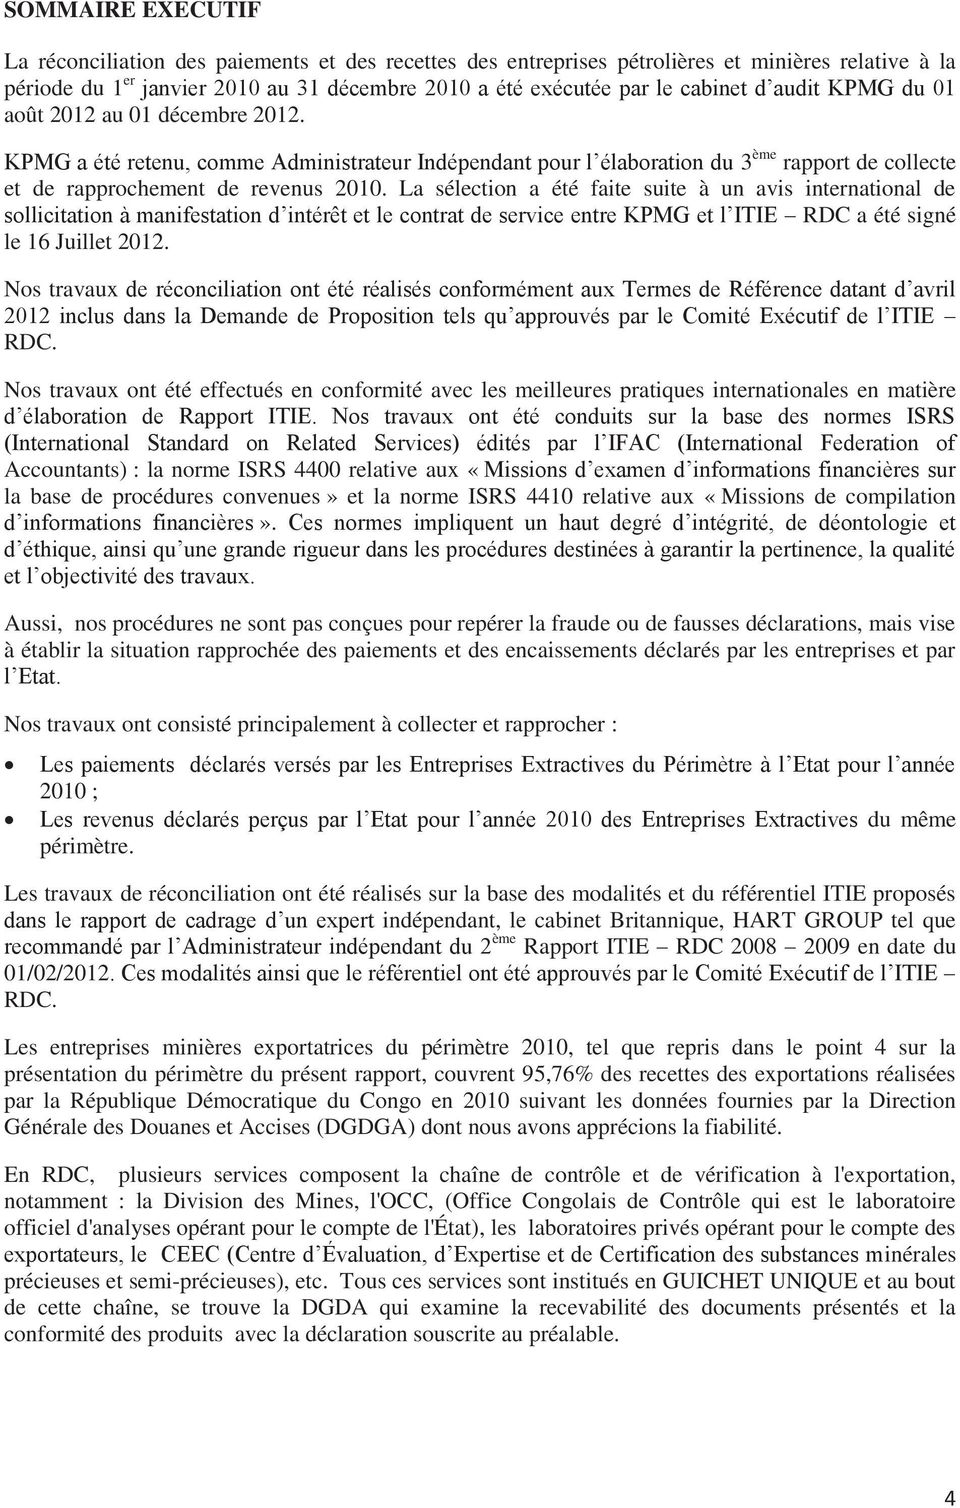 La sélection a été faite suite à un avis international de sollicitation à manifestation d intérêt et le contrat de service entre KPMG et l ITIE RDC a été signé le 16 Juillet 2012.